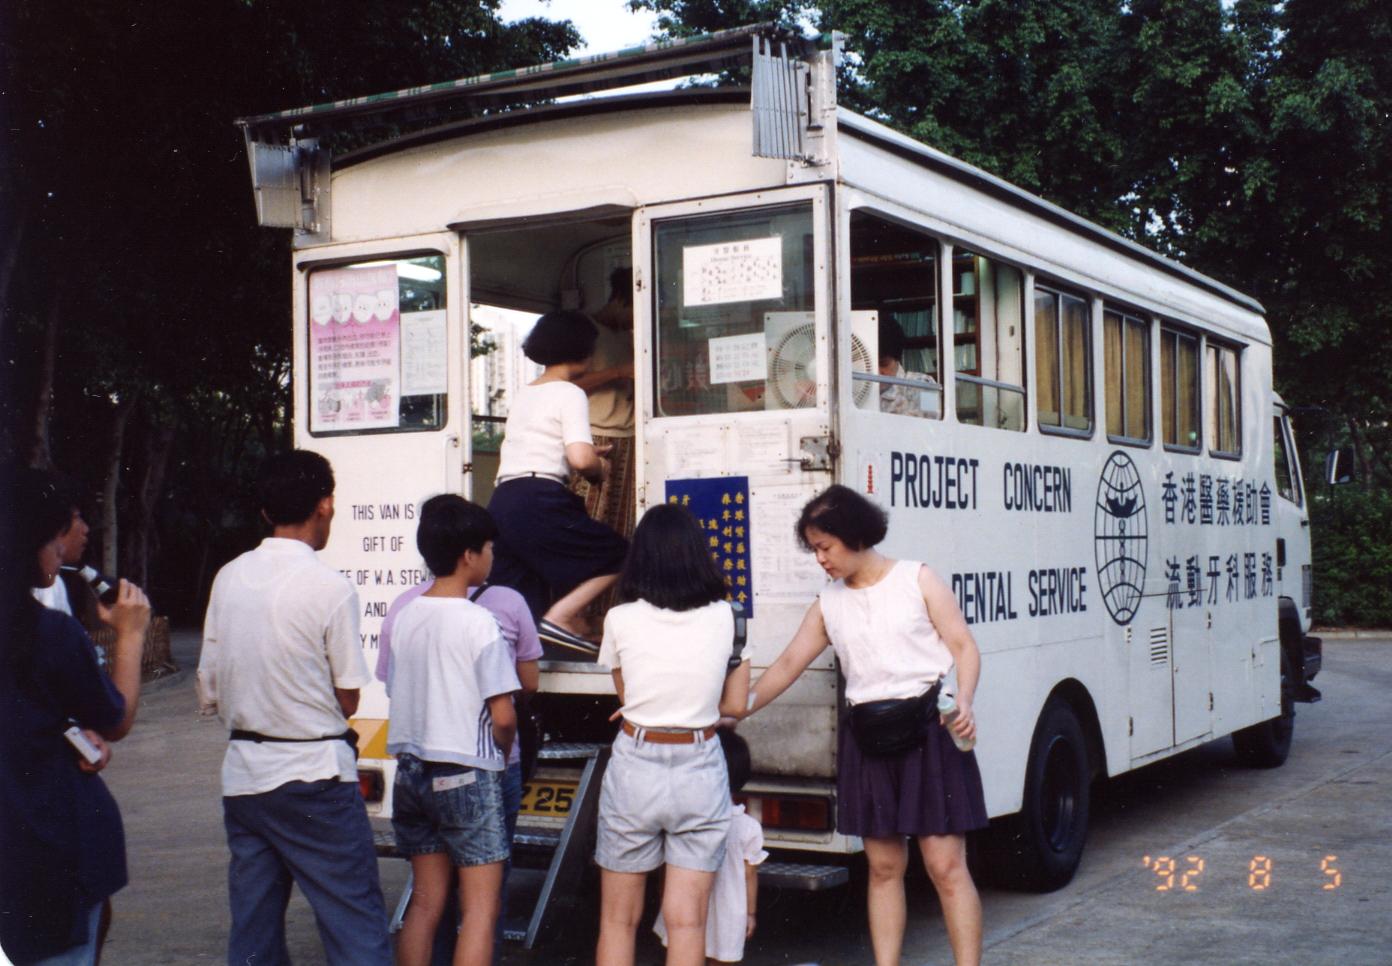 Mobile Dental Service in 1990's